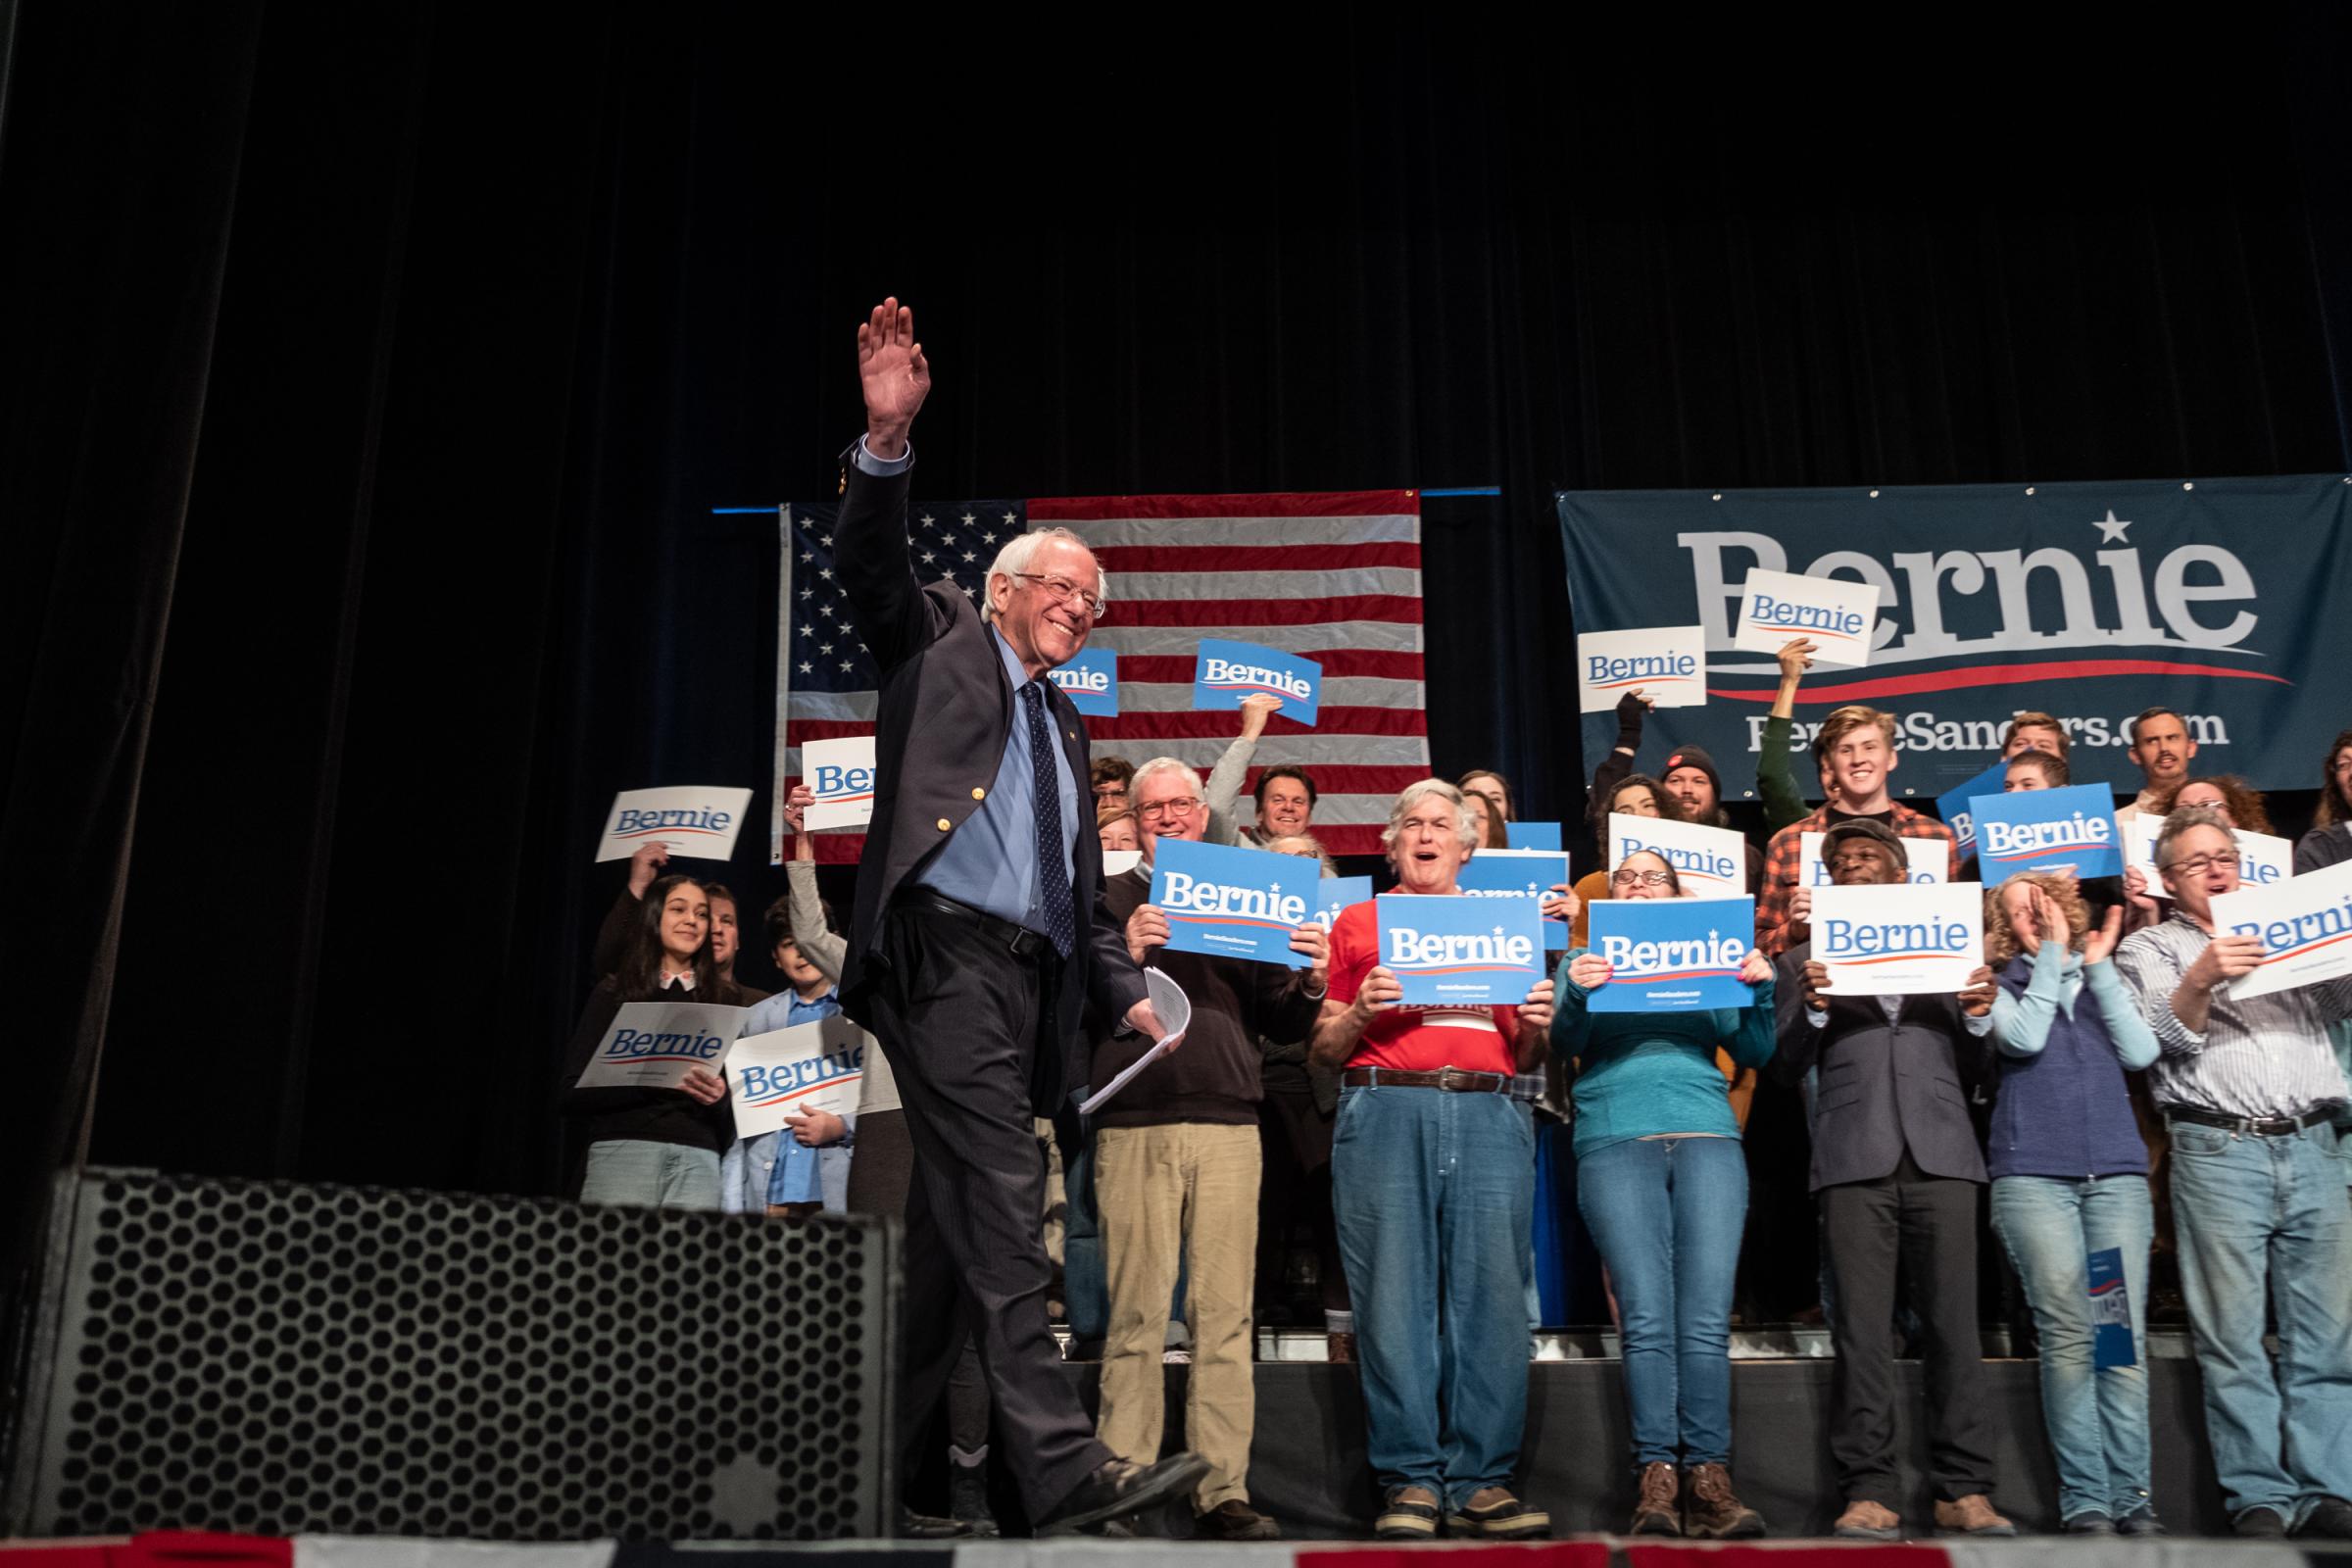 Bernie Sanders in Keene, NH - Bernie Sanders takes the stage at the Colonial Theatre in...